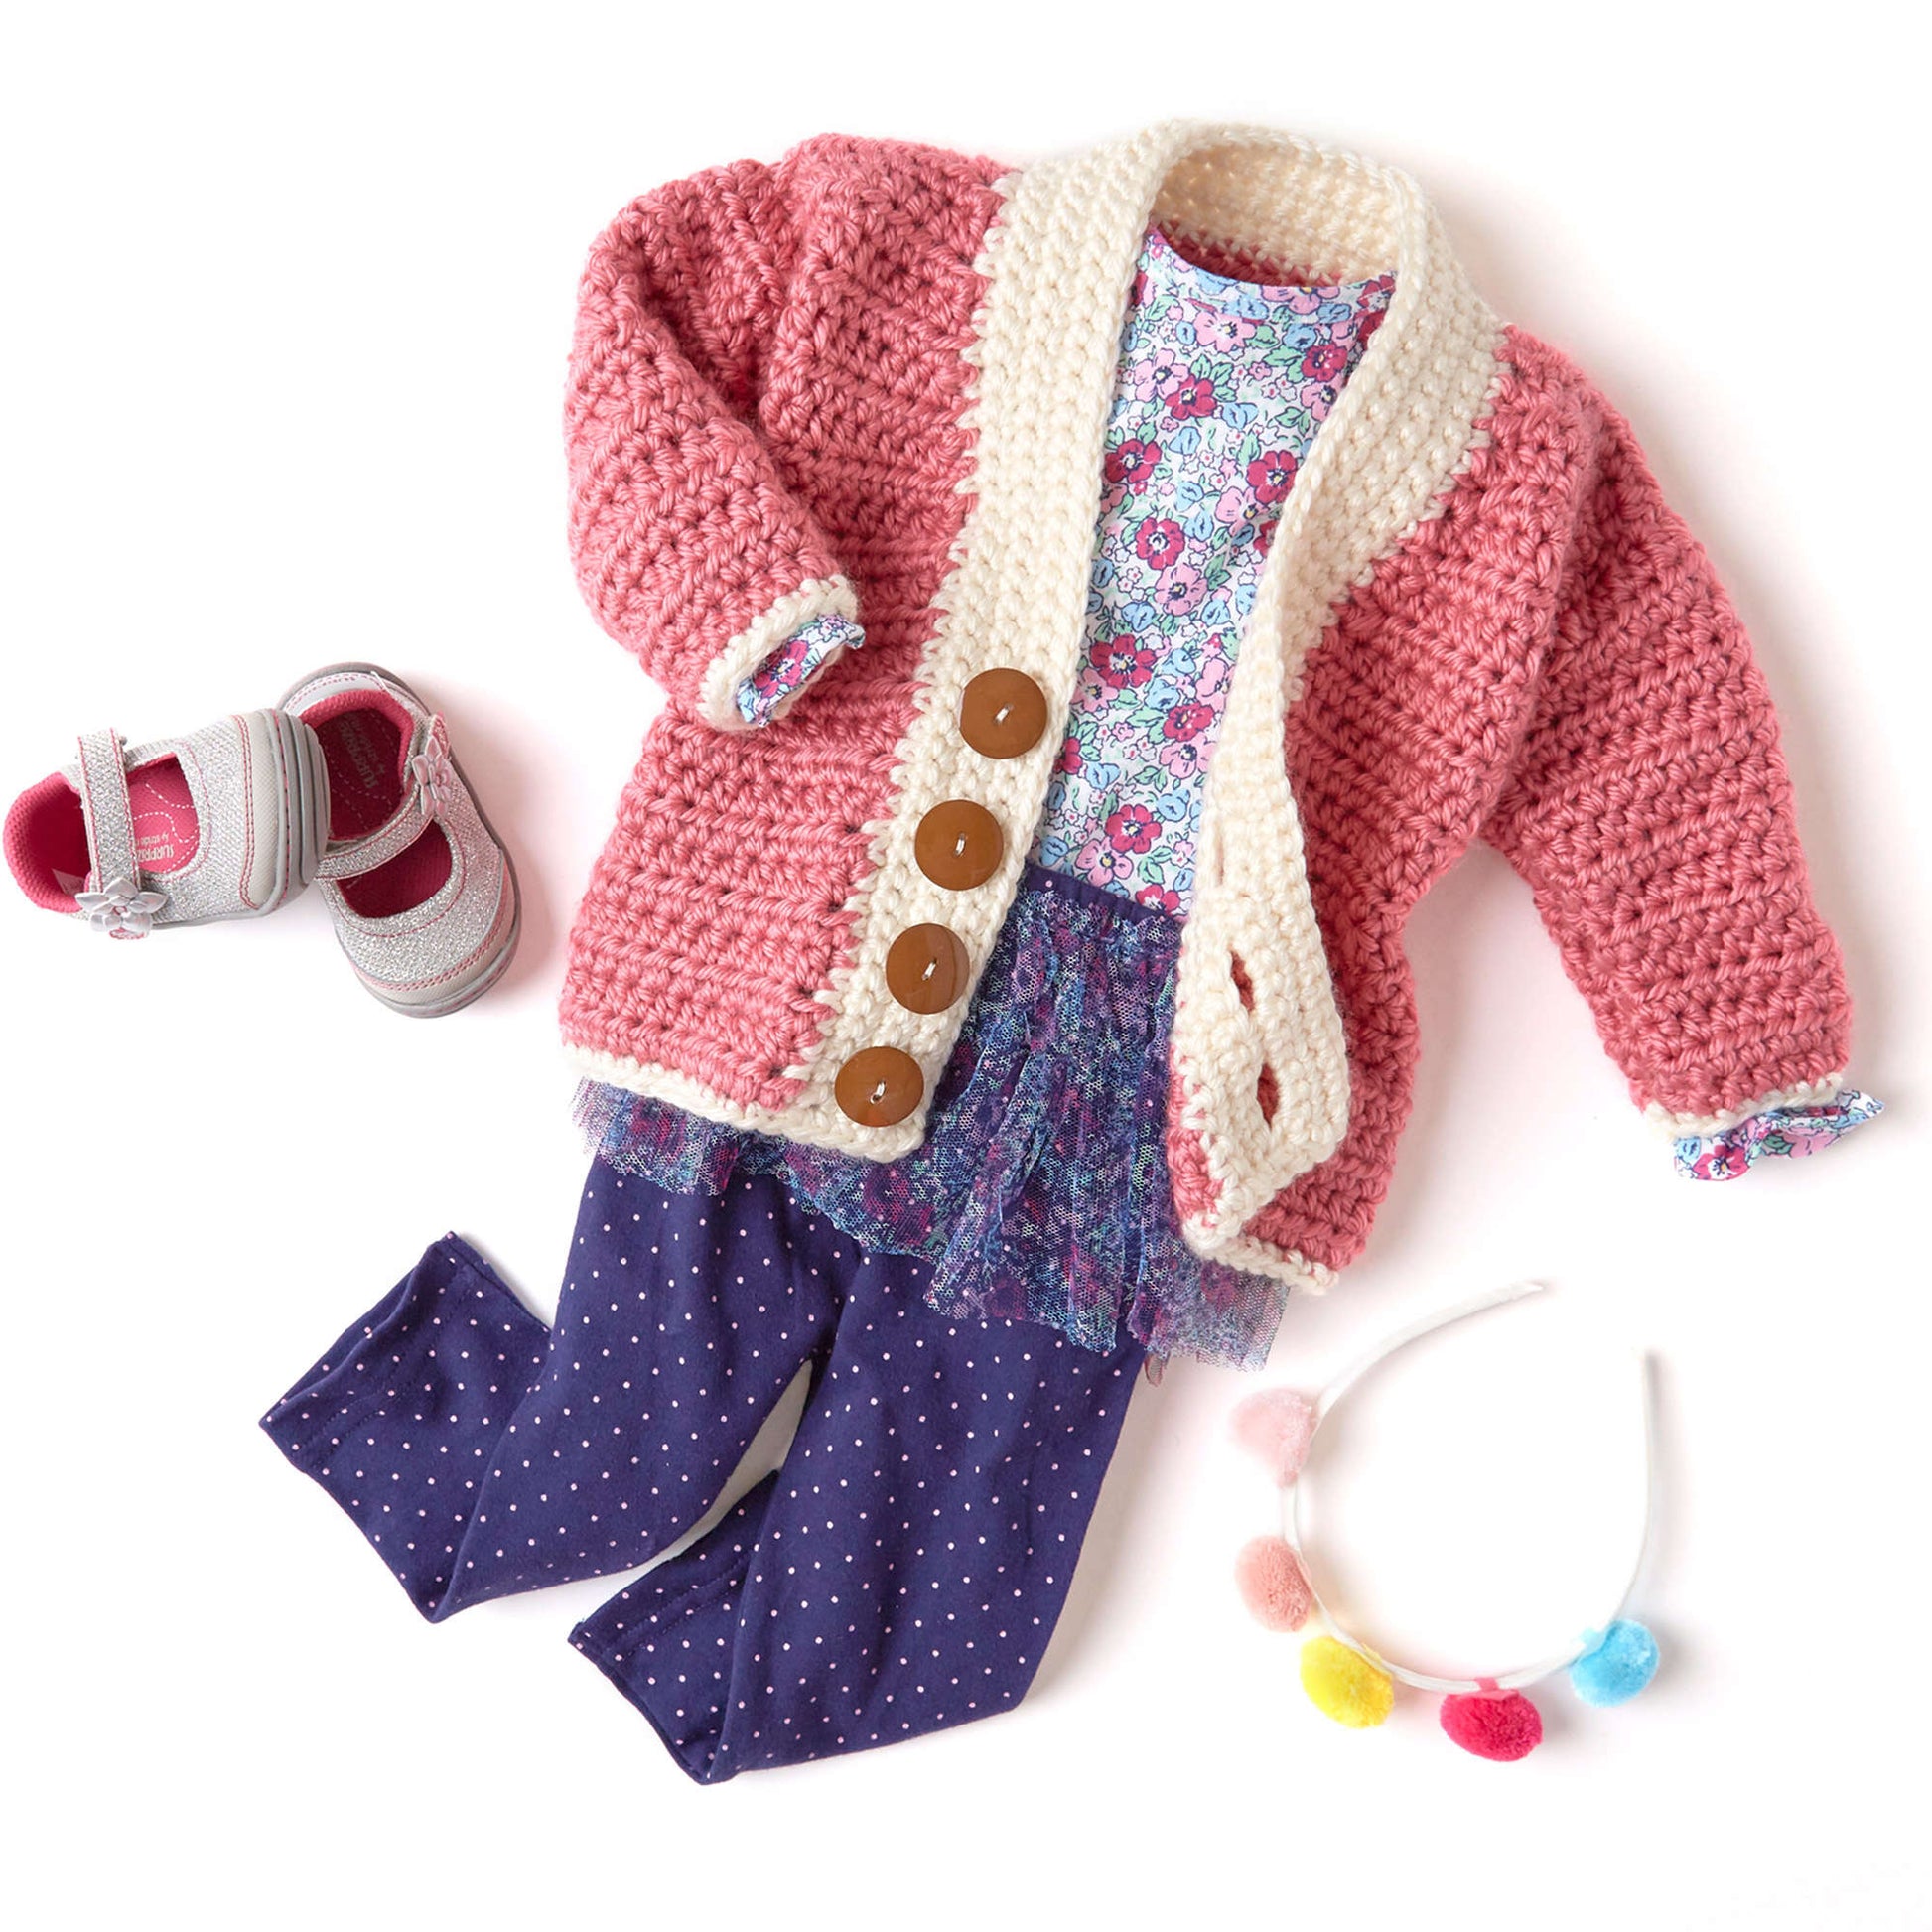 Free Red Heart Crochet Cutie Baby Cardigan Pattern